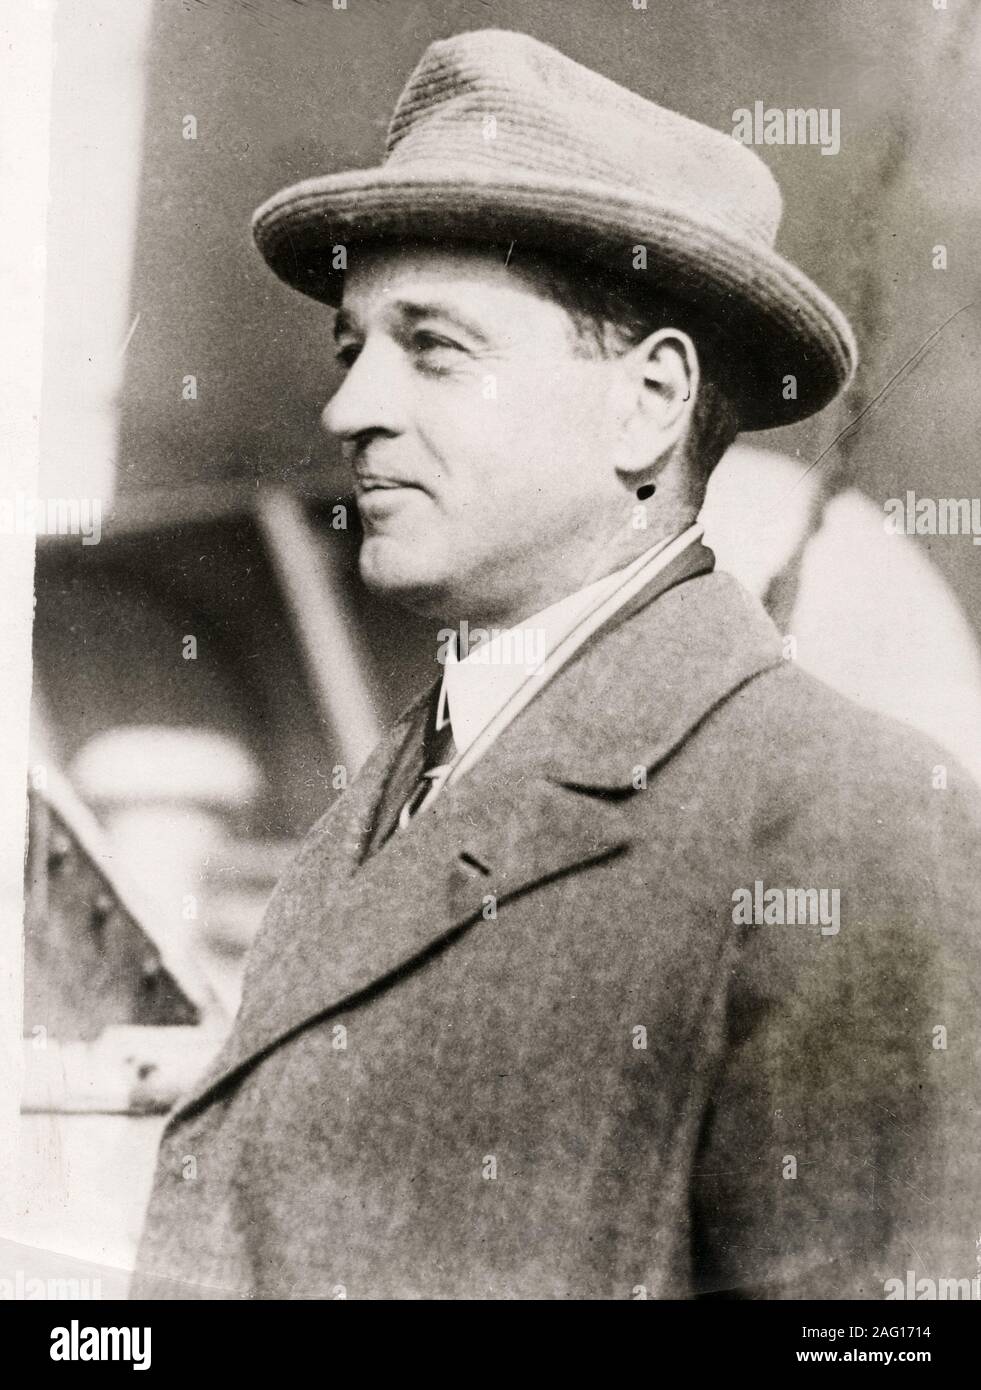 William Kissam Vanderbilt II (26. Oktober 1878 - vom 8. Januar 1944) war ein motor racing Enthusiast und Segler, und ein Mitglied der prominente US-amerikanische Familie Vanderbilt Stockfoto